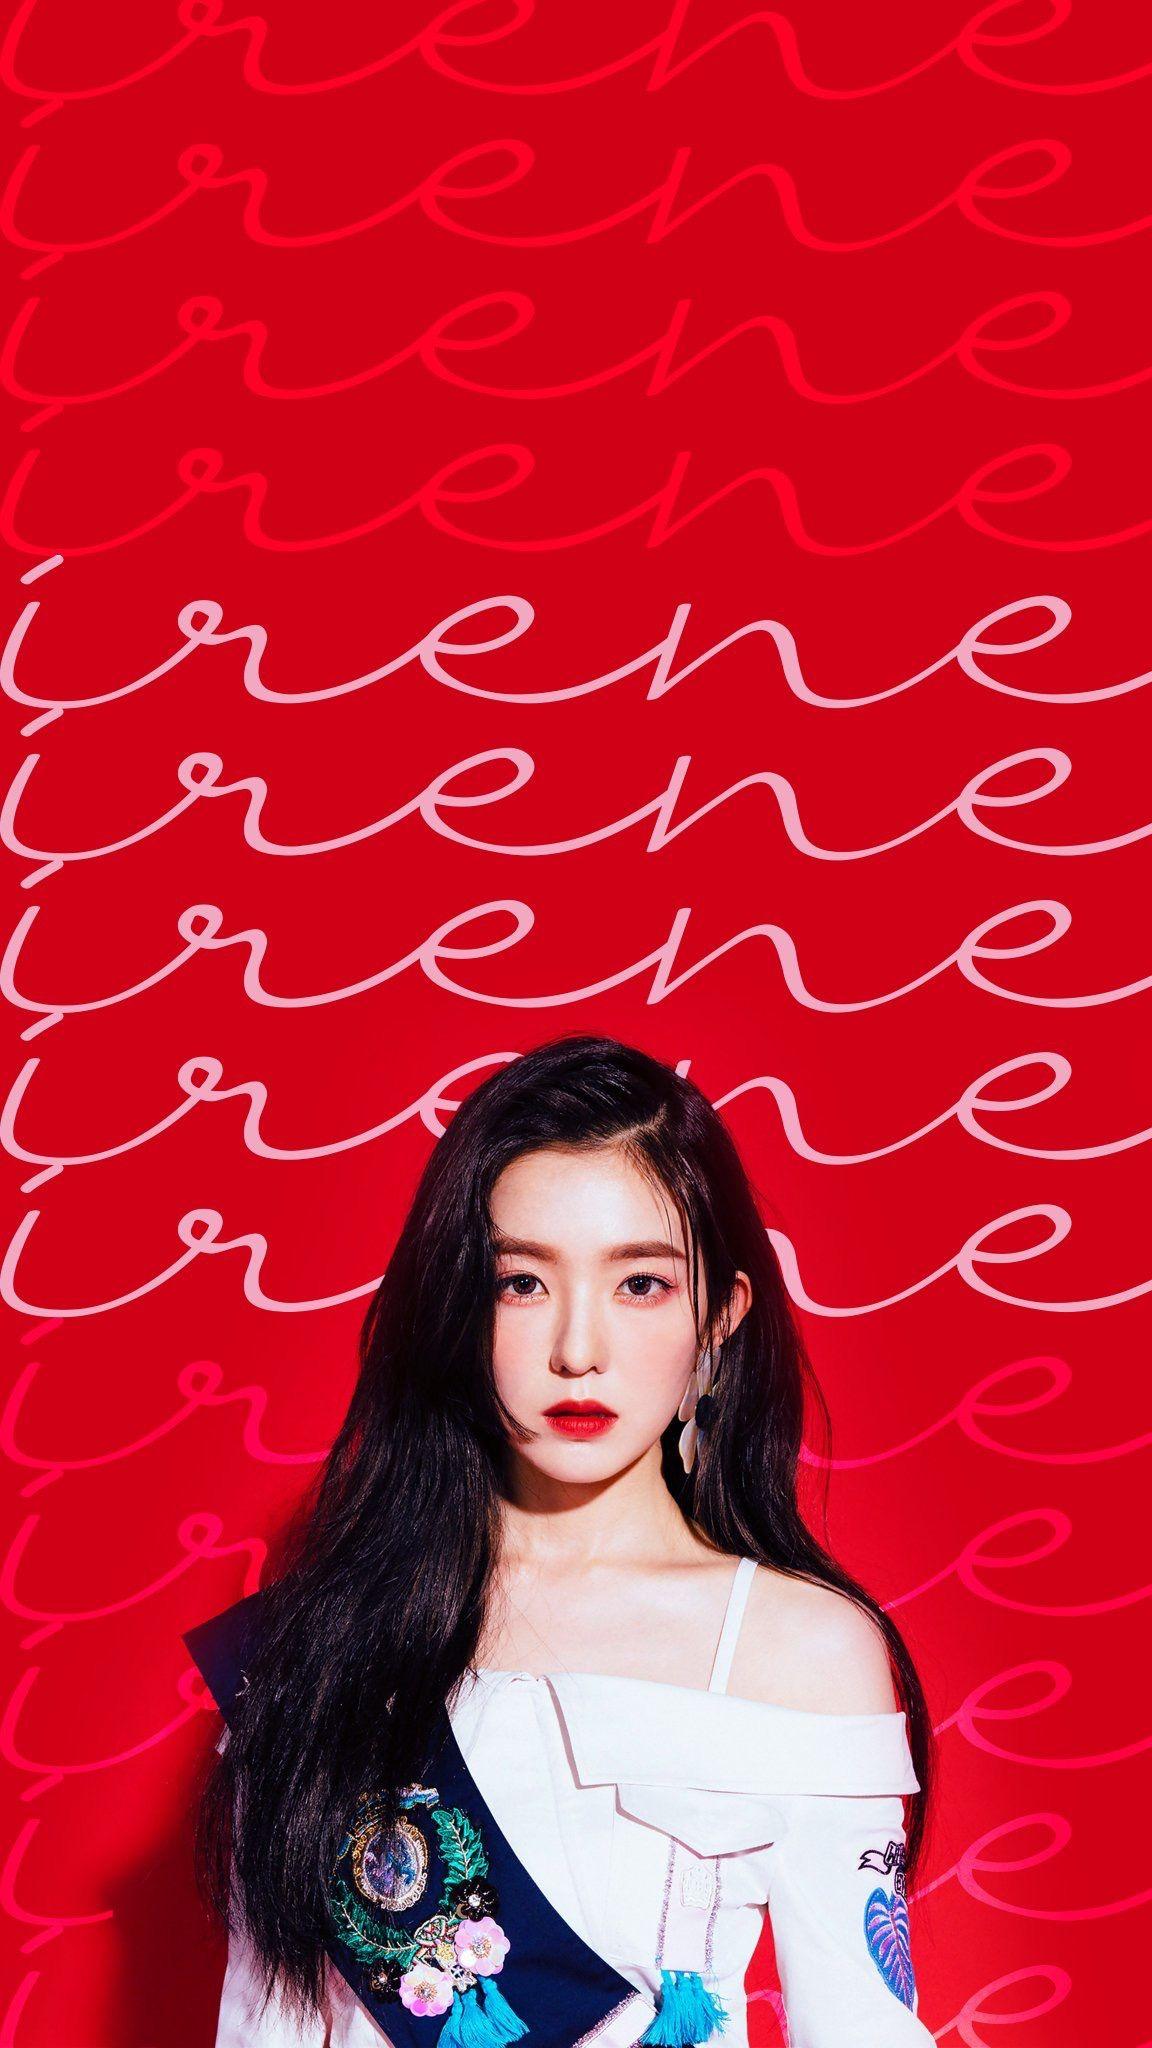 Irene Red Velvet Wallpaper Free Irene Red Velvet